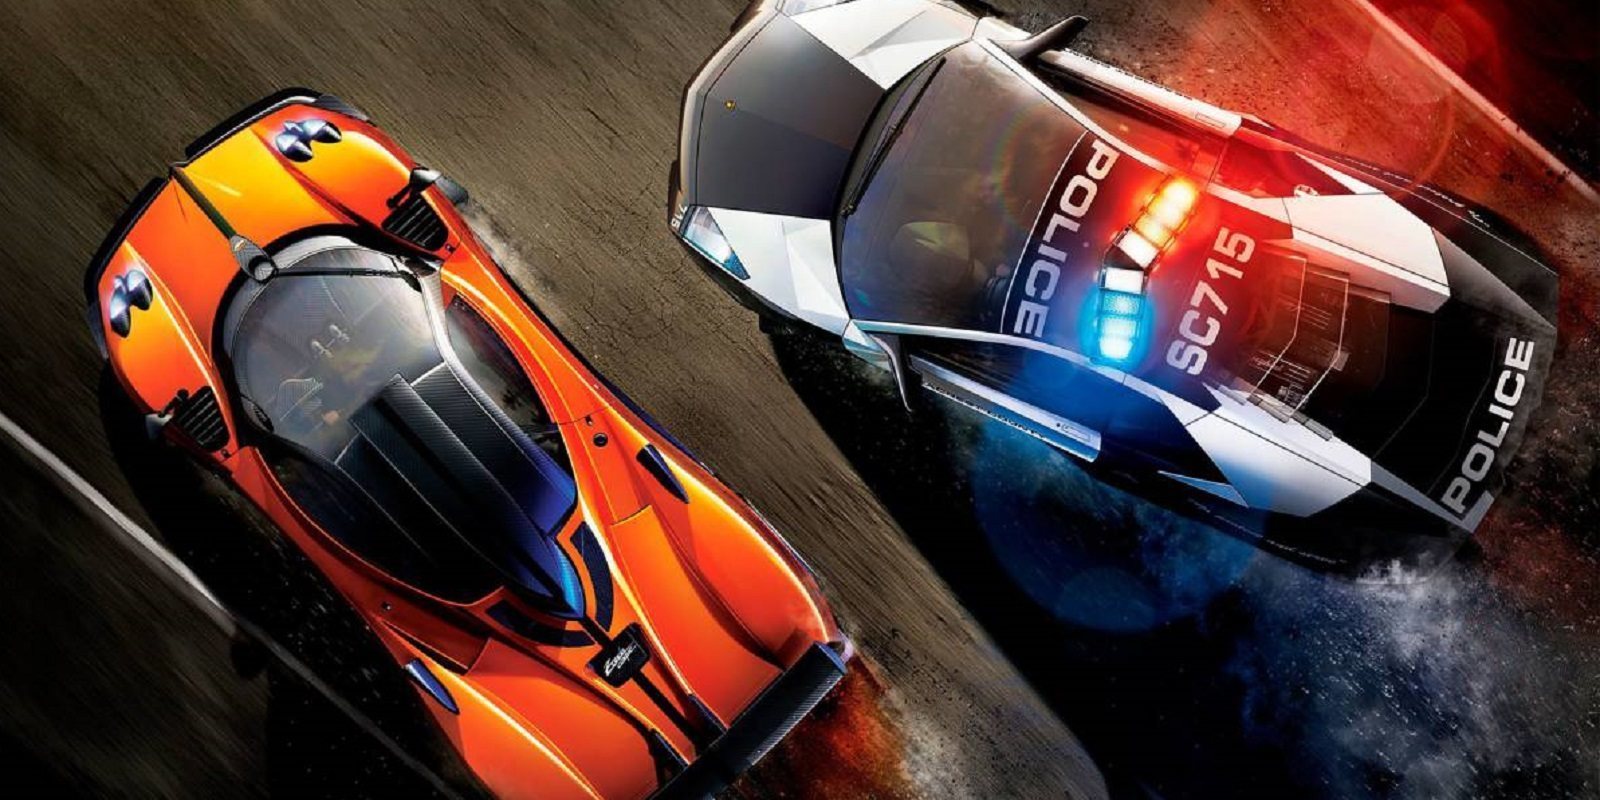 Análisis de 'Need for Speed: Hot Pursuit Remastered' para PS4, buen remaster y mejor juego